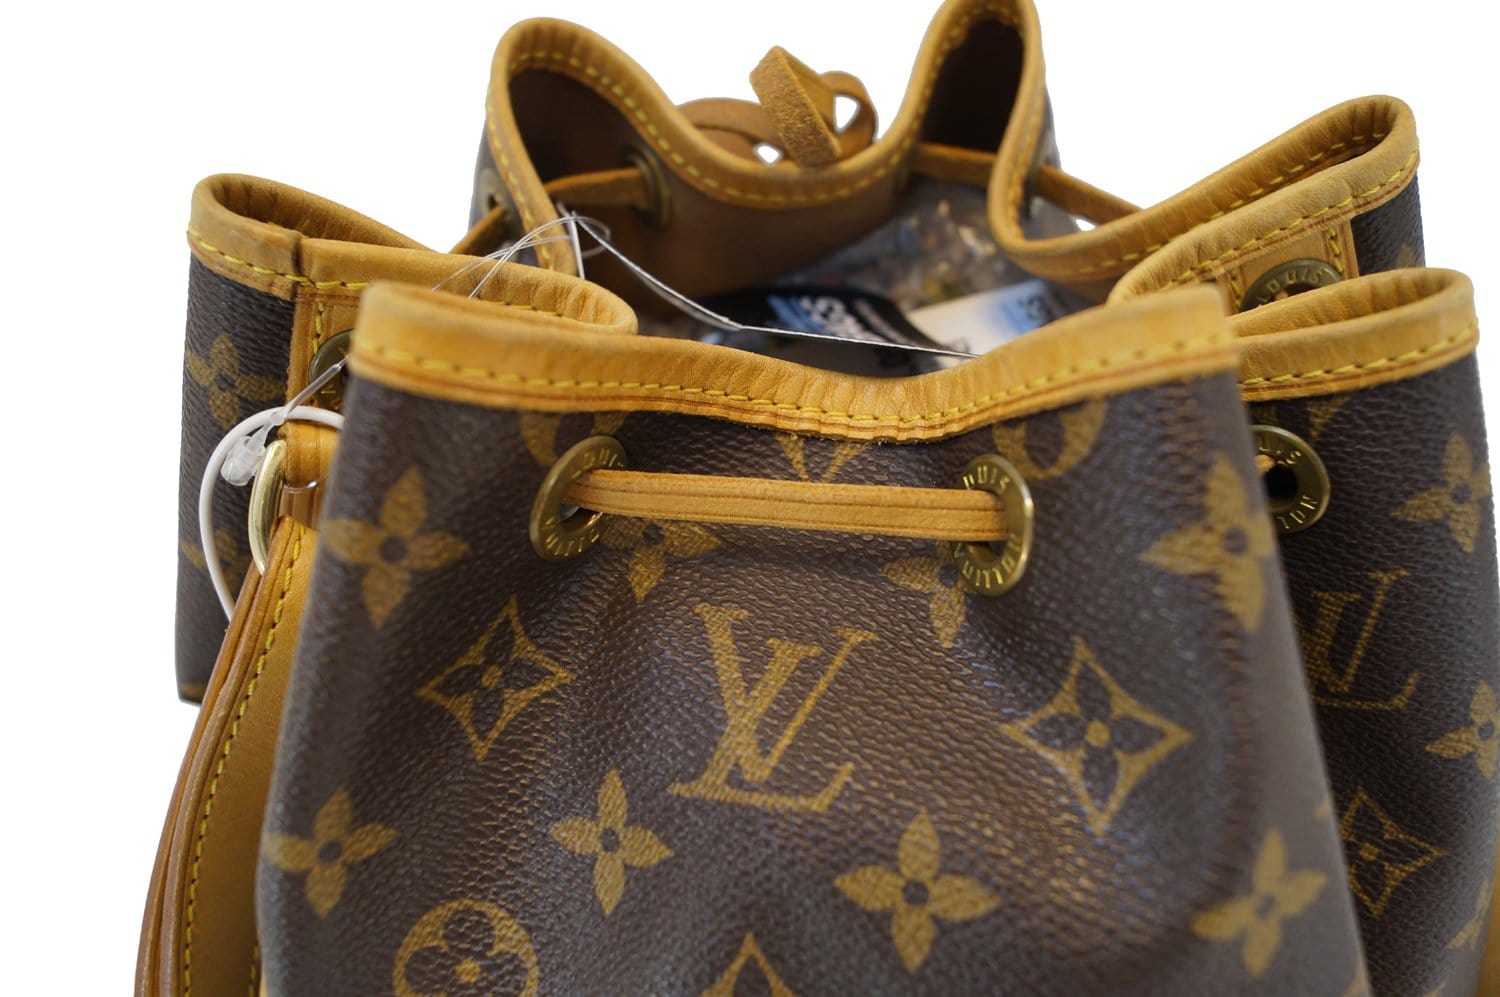 Louis Vuitton Mustard Leather Large Noe Drawstring Shoulder Bag